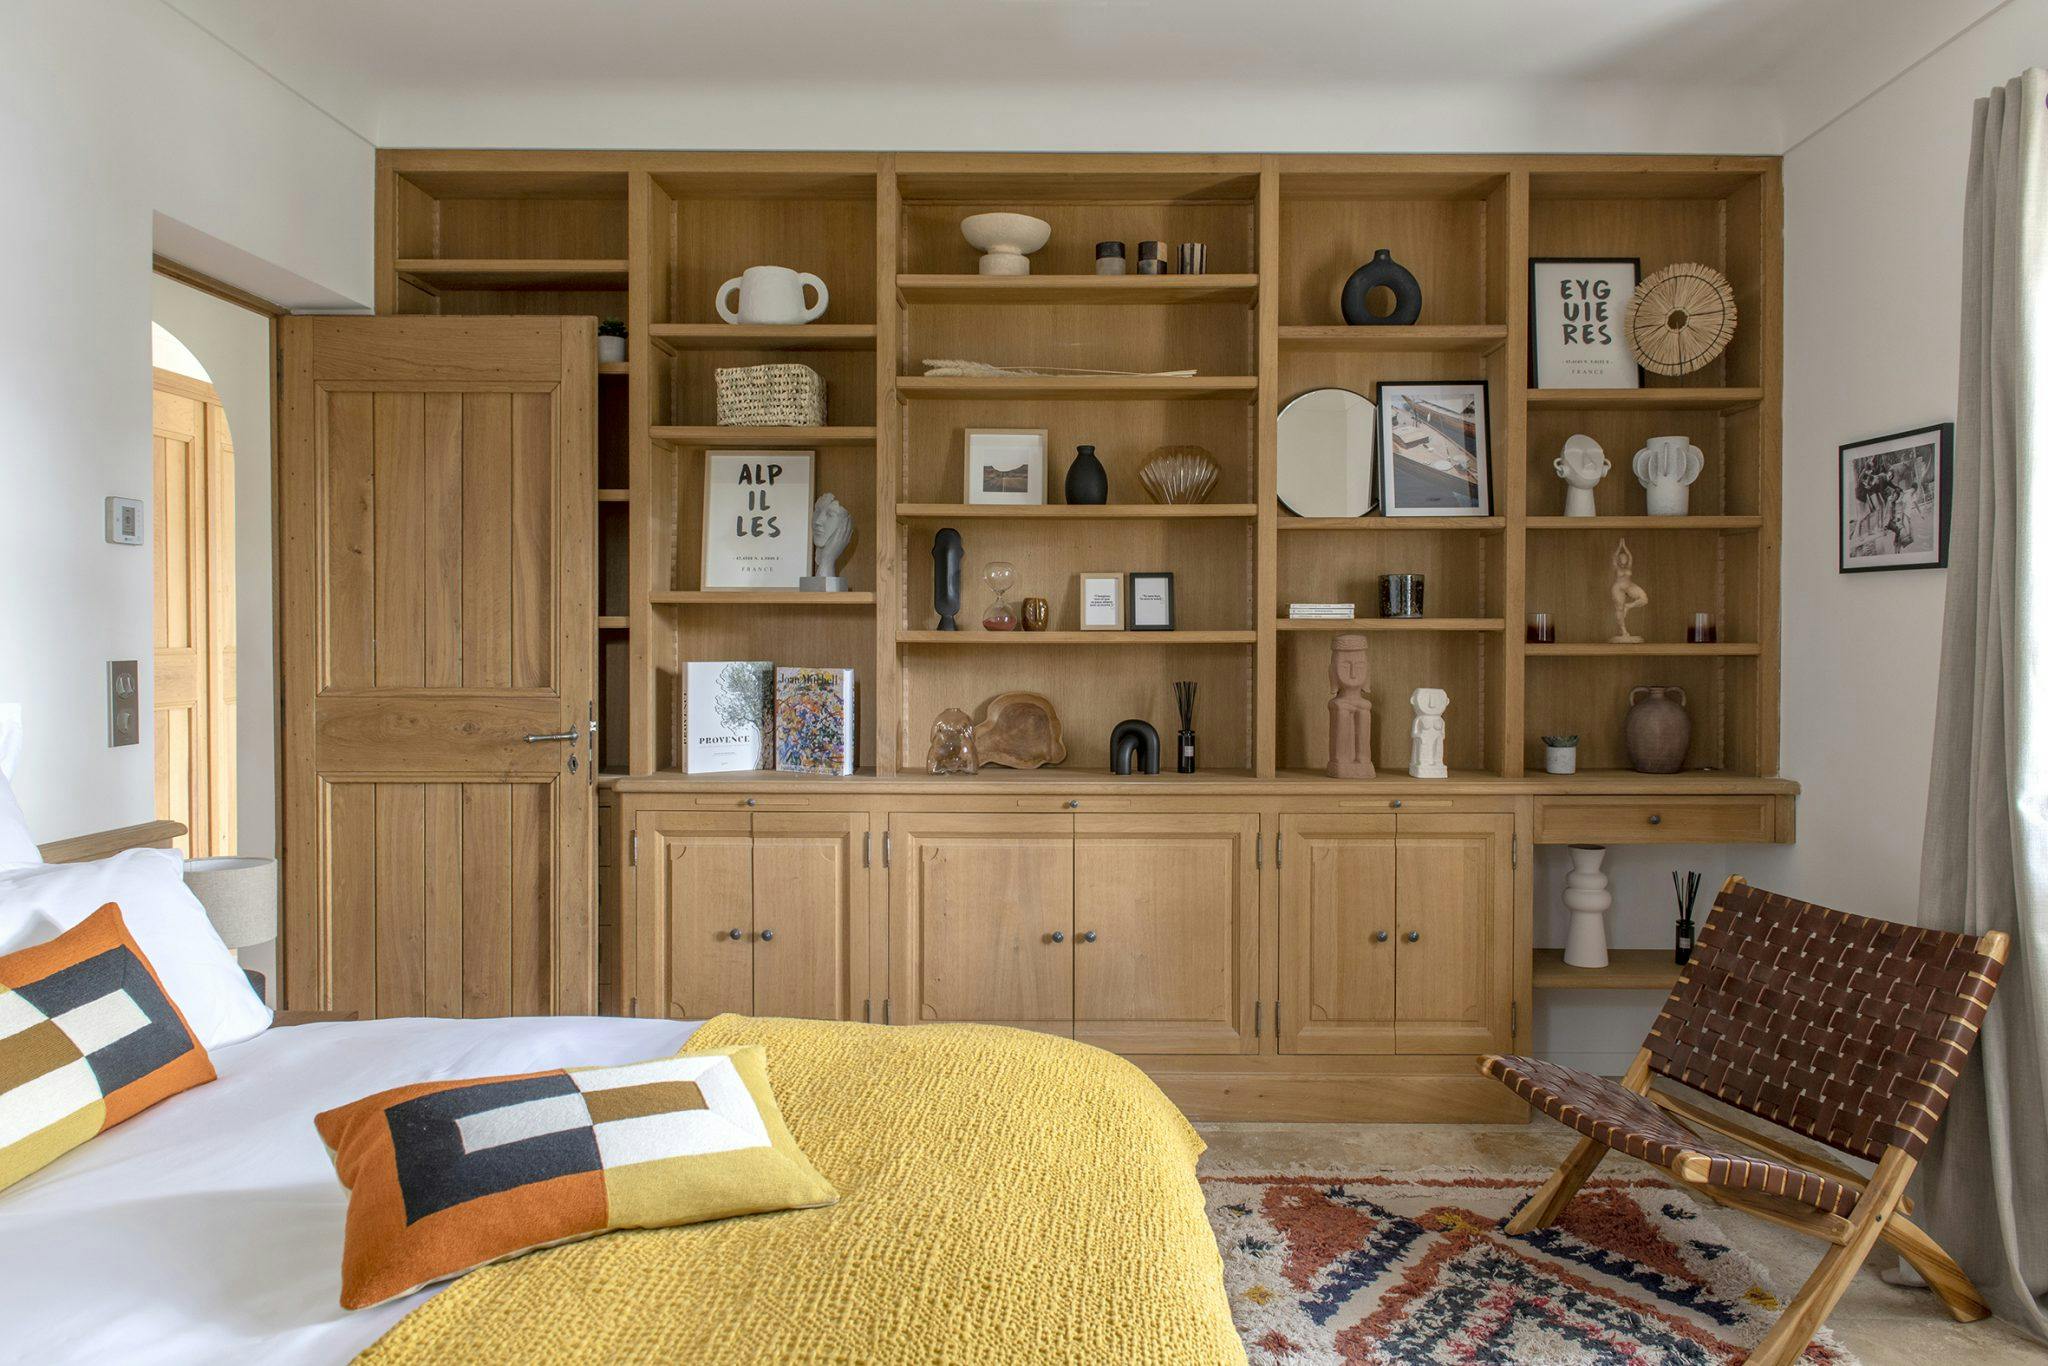 Bedroom with wooden shelf